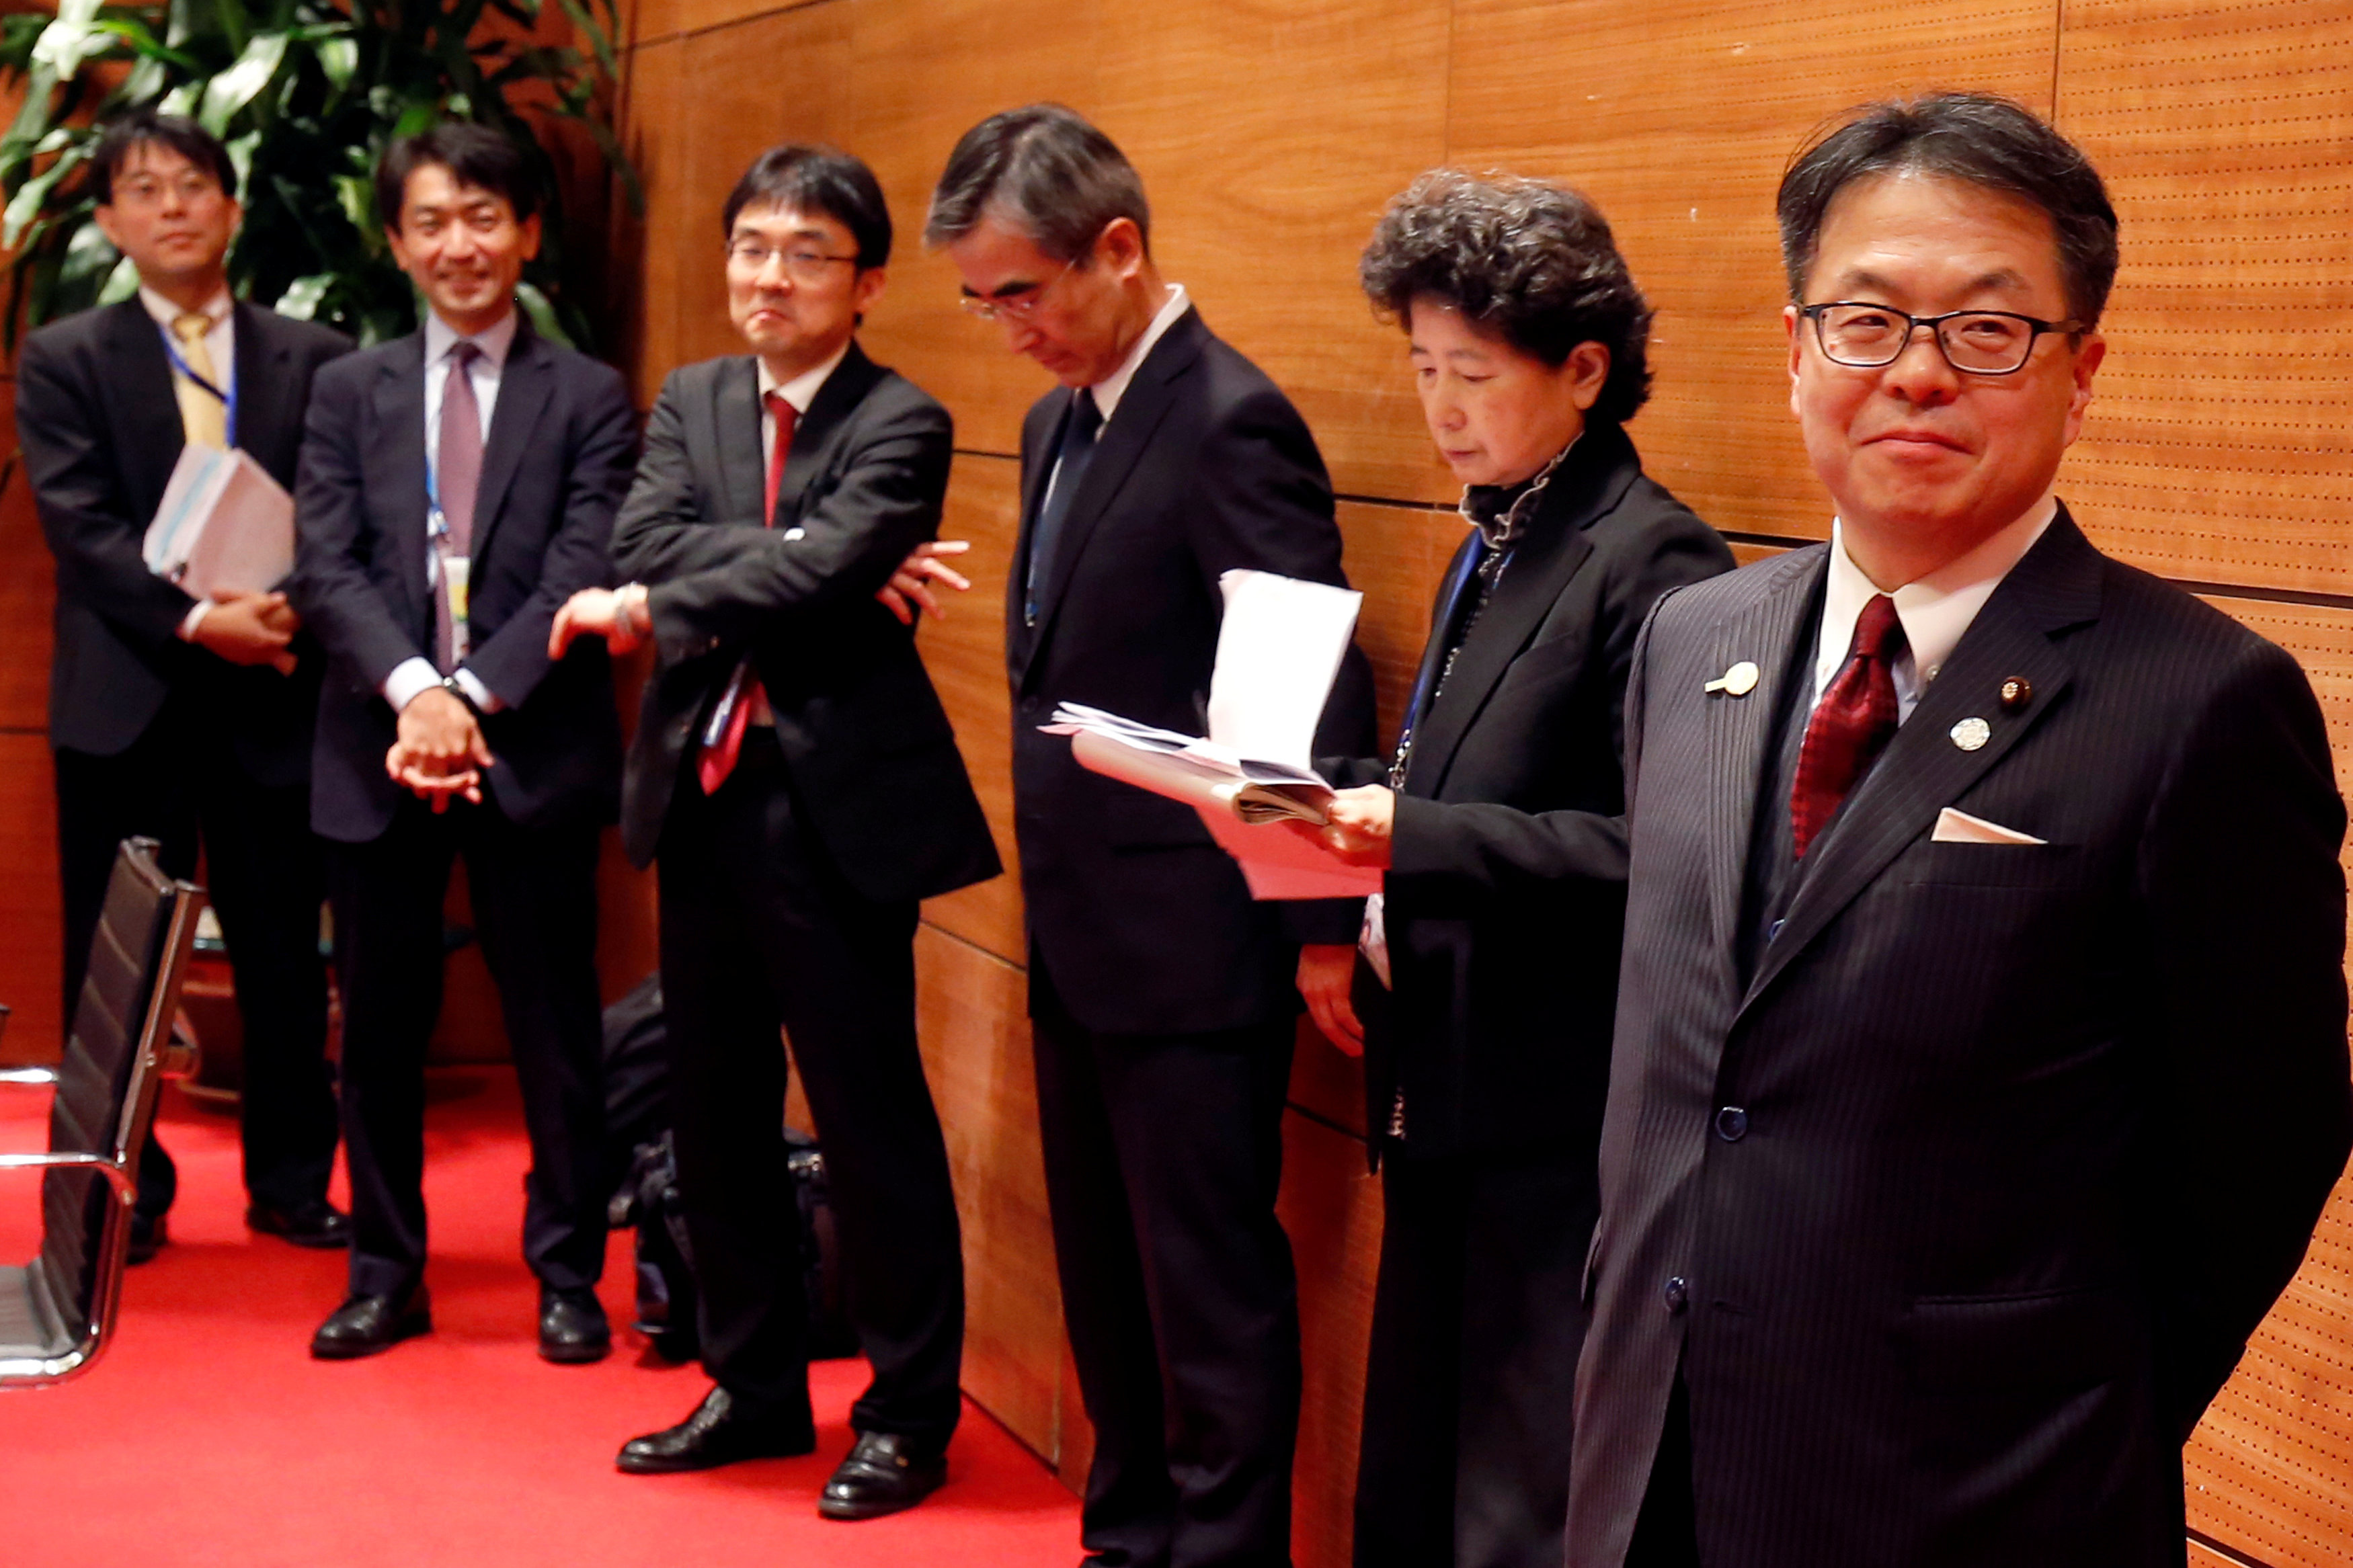 وزير التجارة اليابانى ينتظر وصول ممثل التجارة الأمريكى